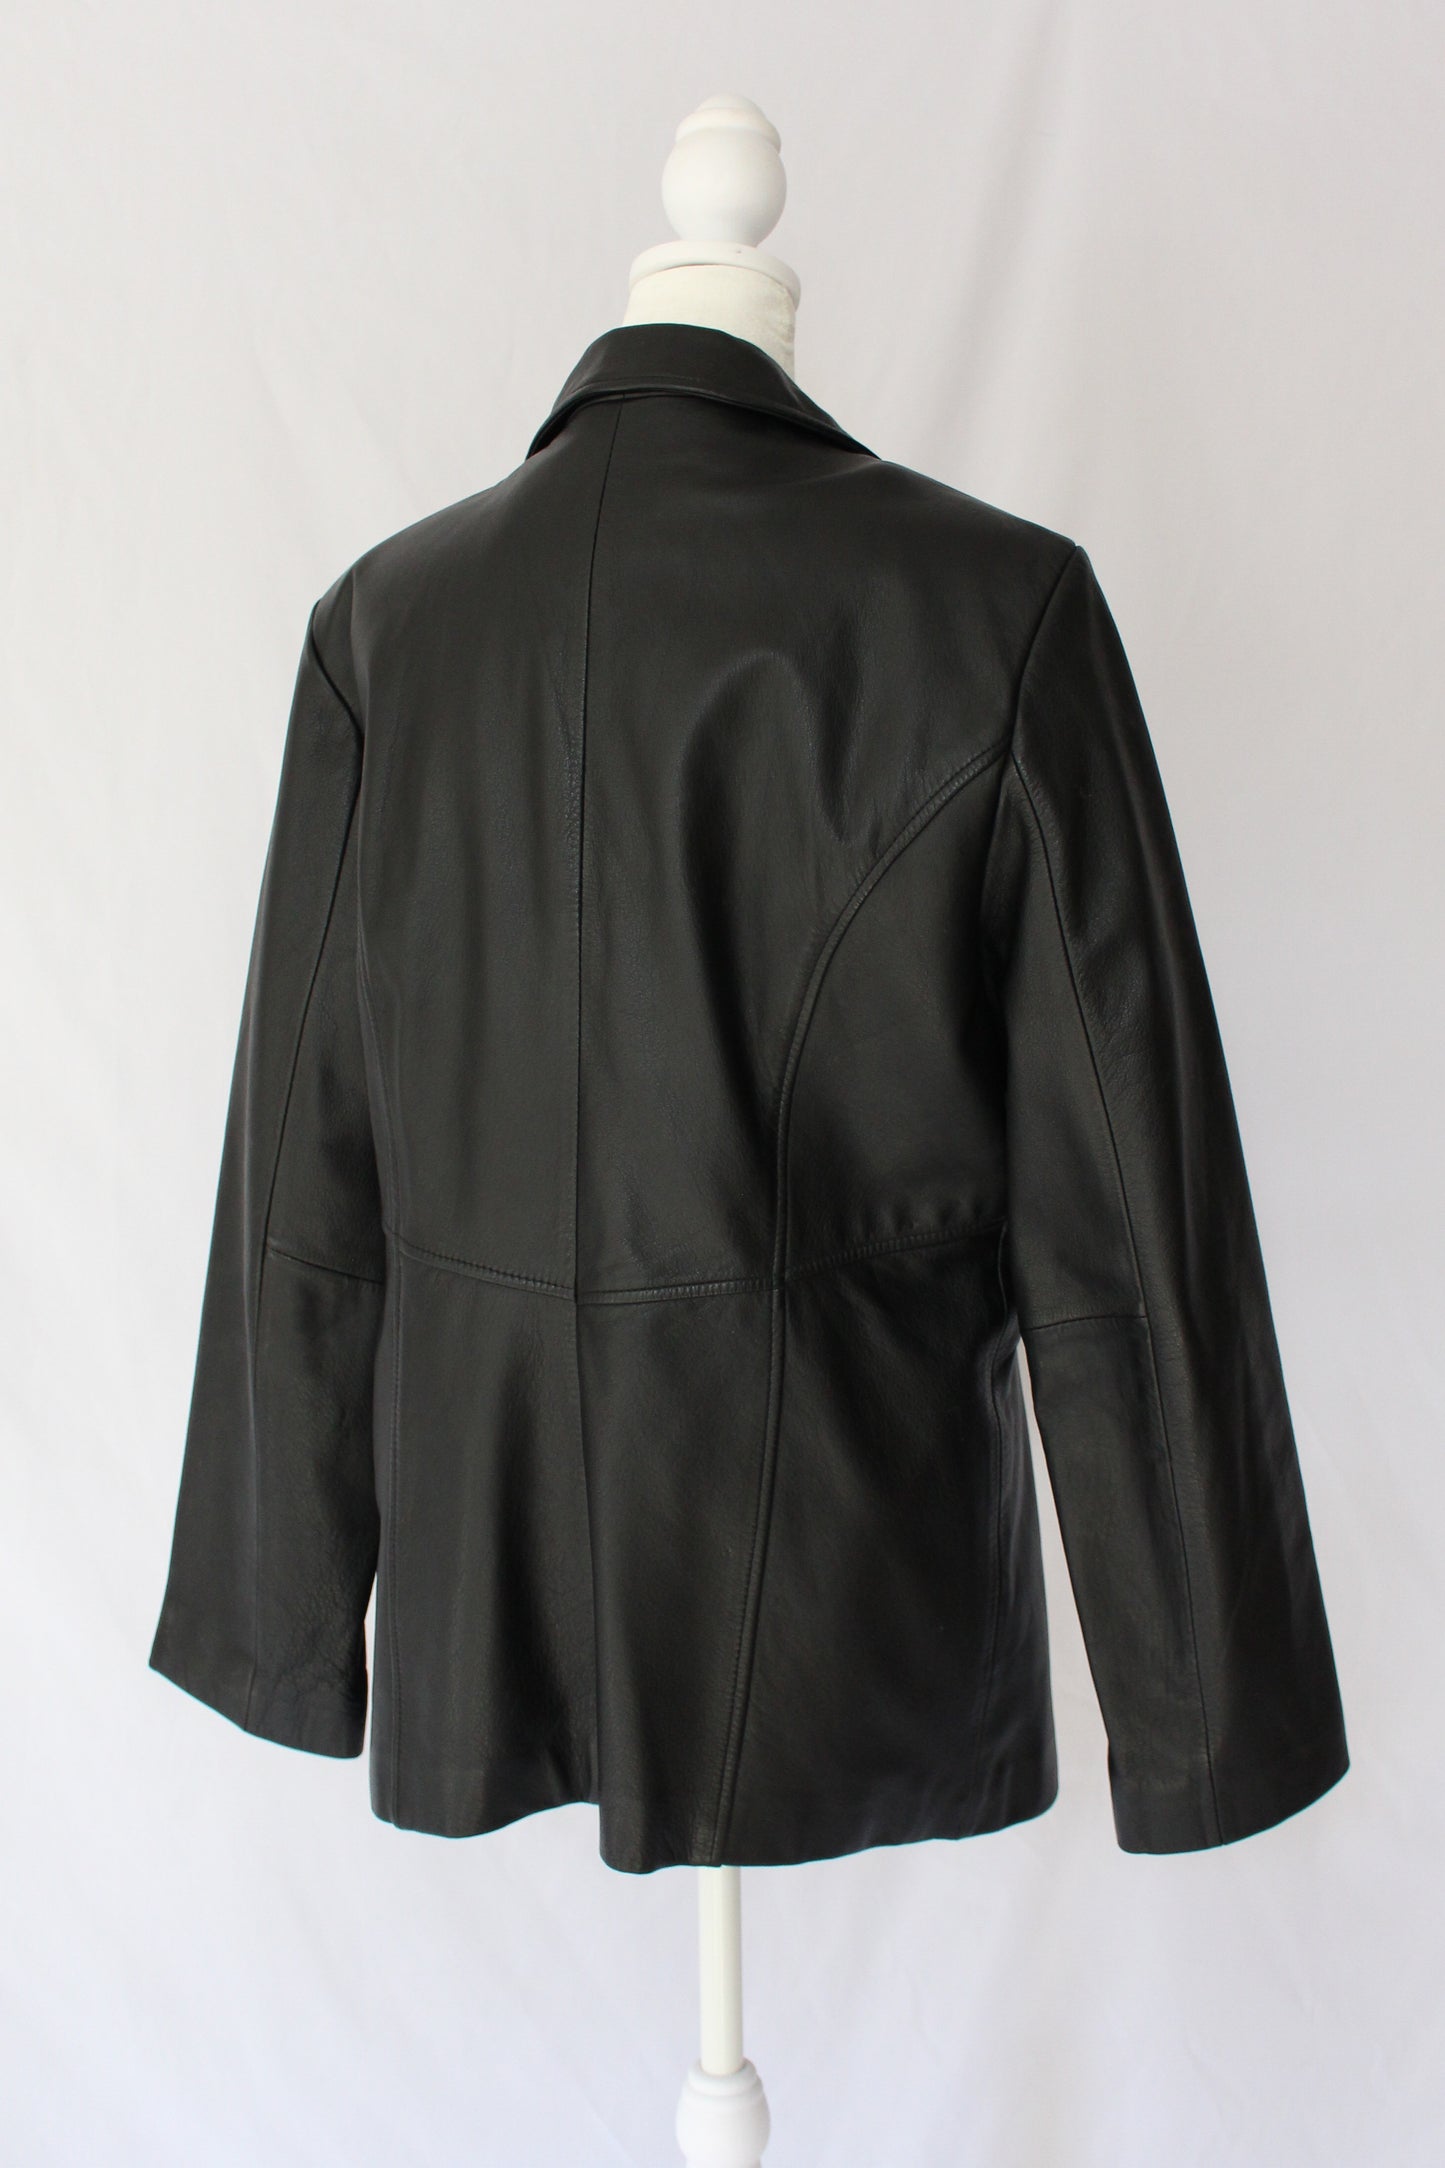 size large wilsons black leather jacket